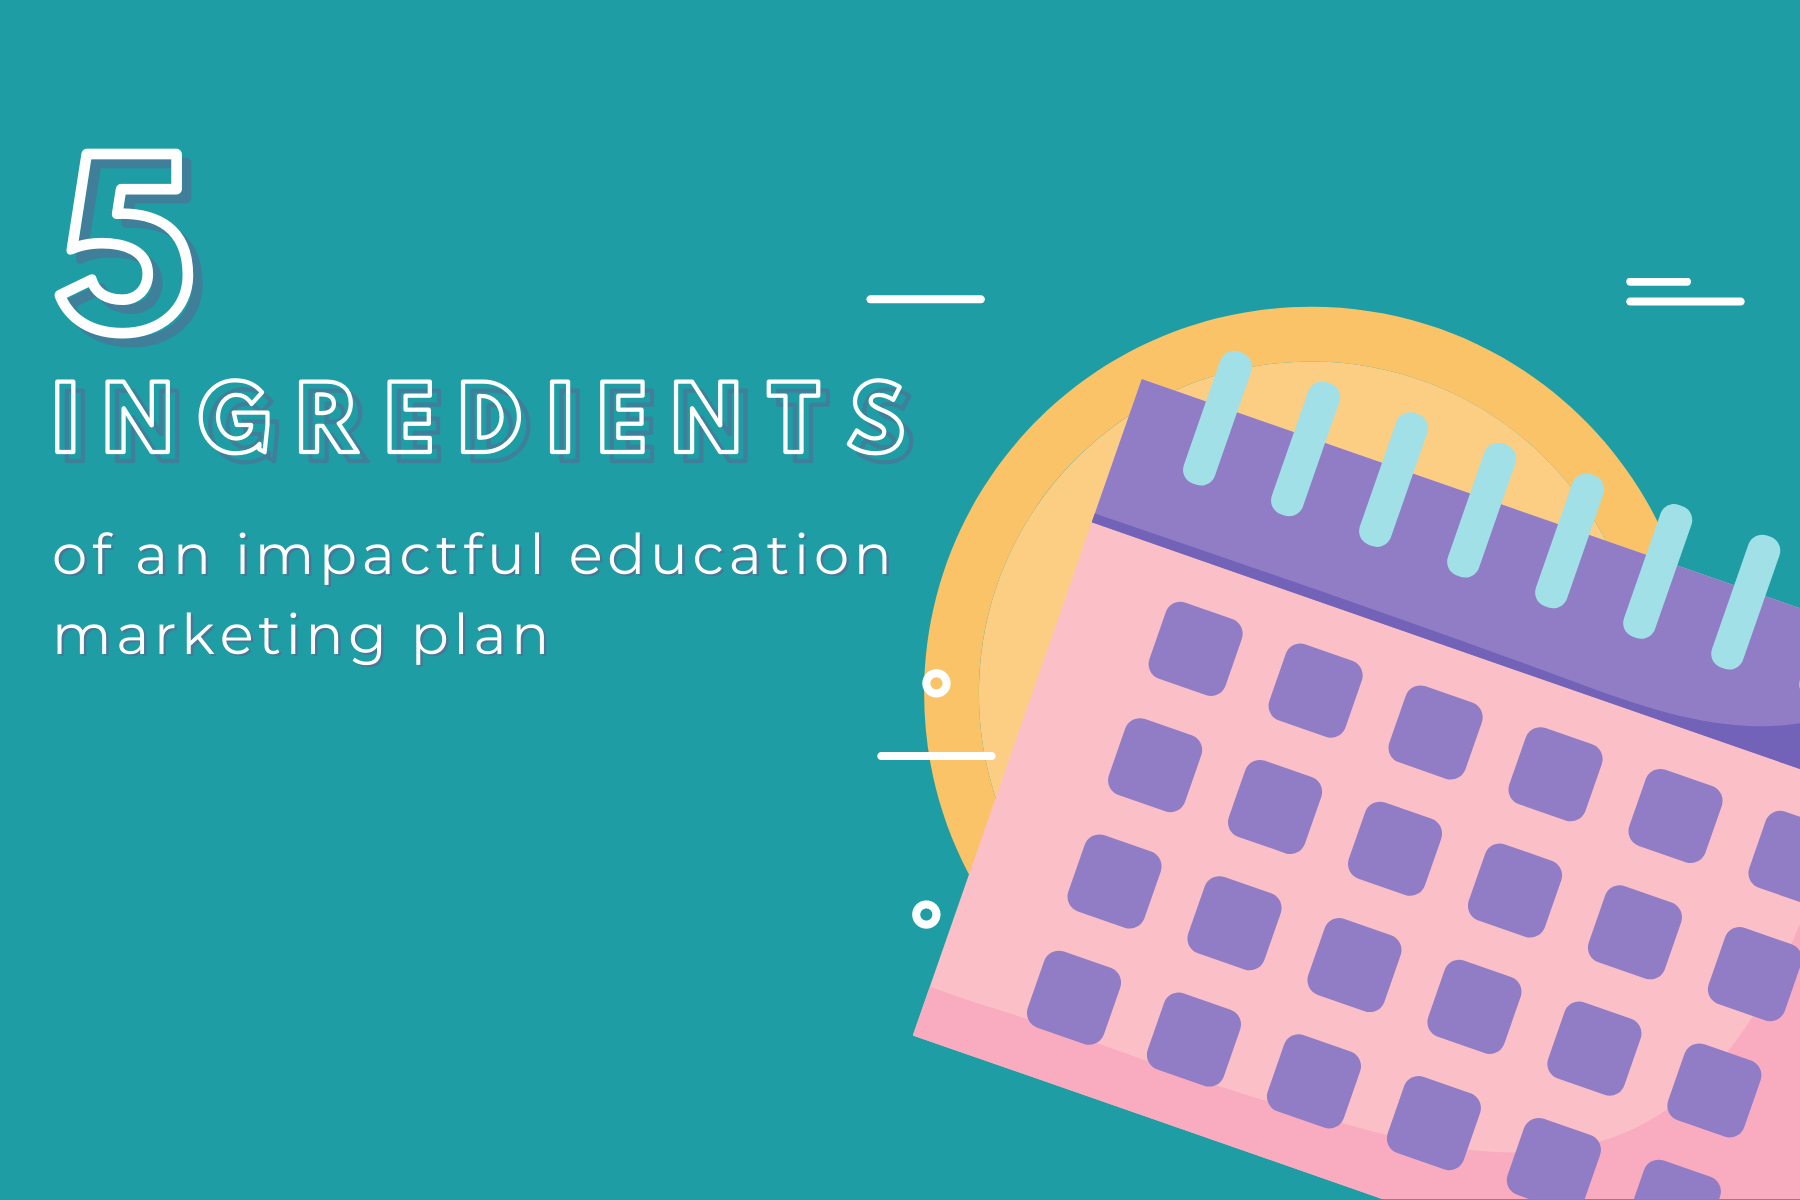 5 ingredients of an impactful education marketing plan